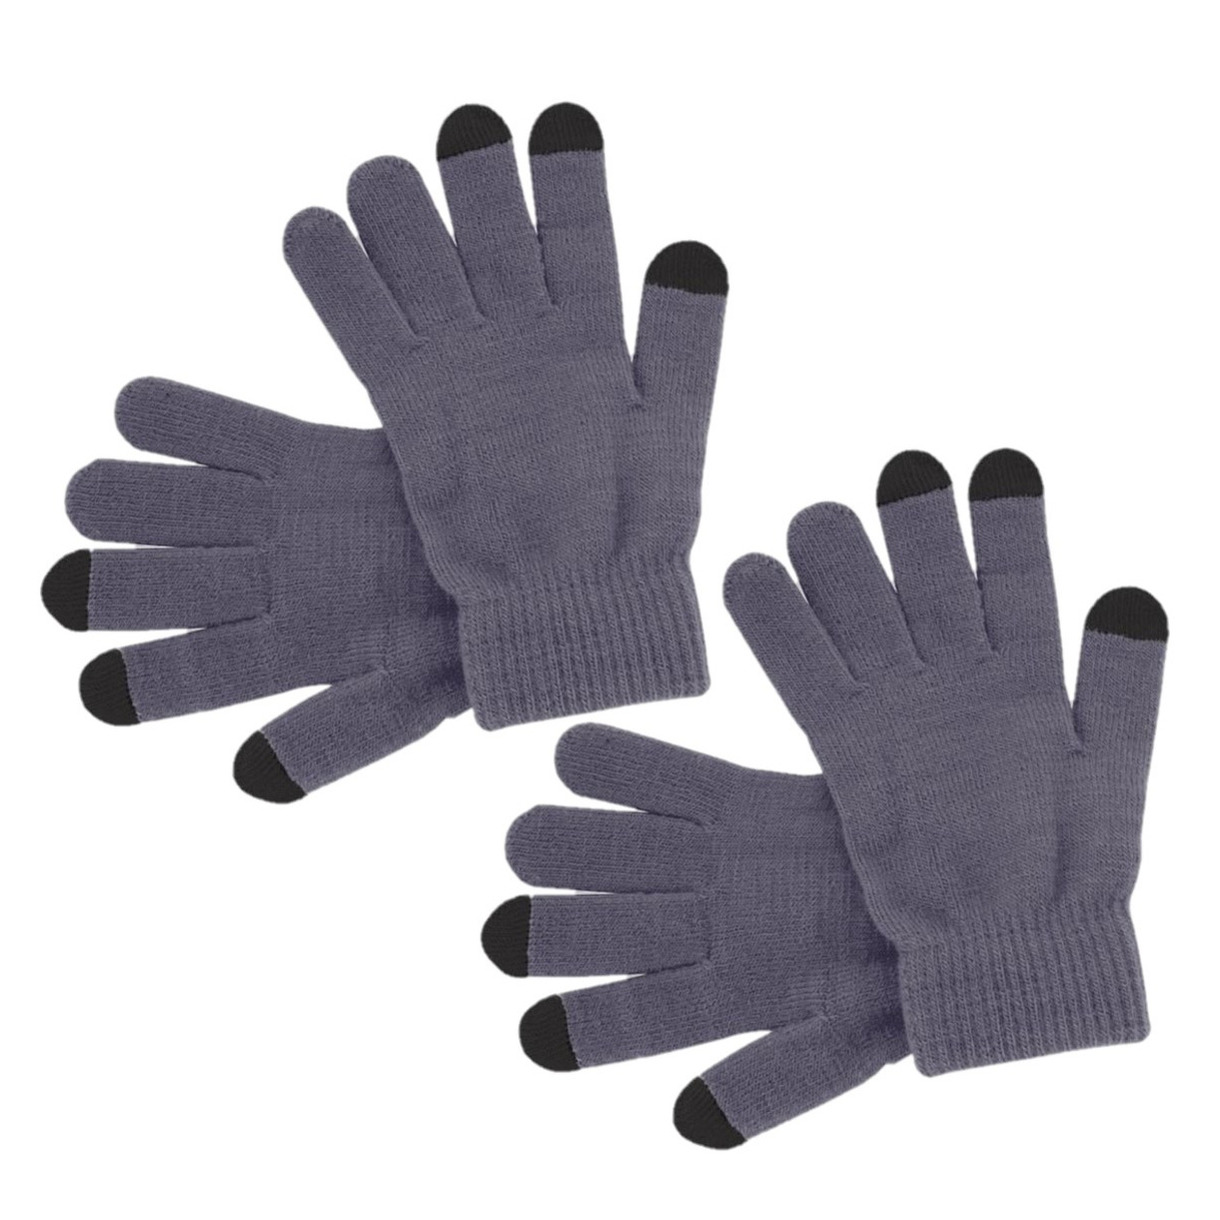 2x paar touchscreen smartphone handschoenen grijs voor volwassenen